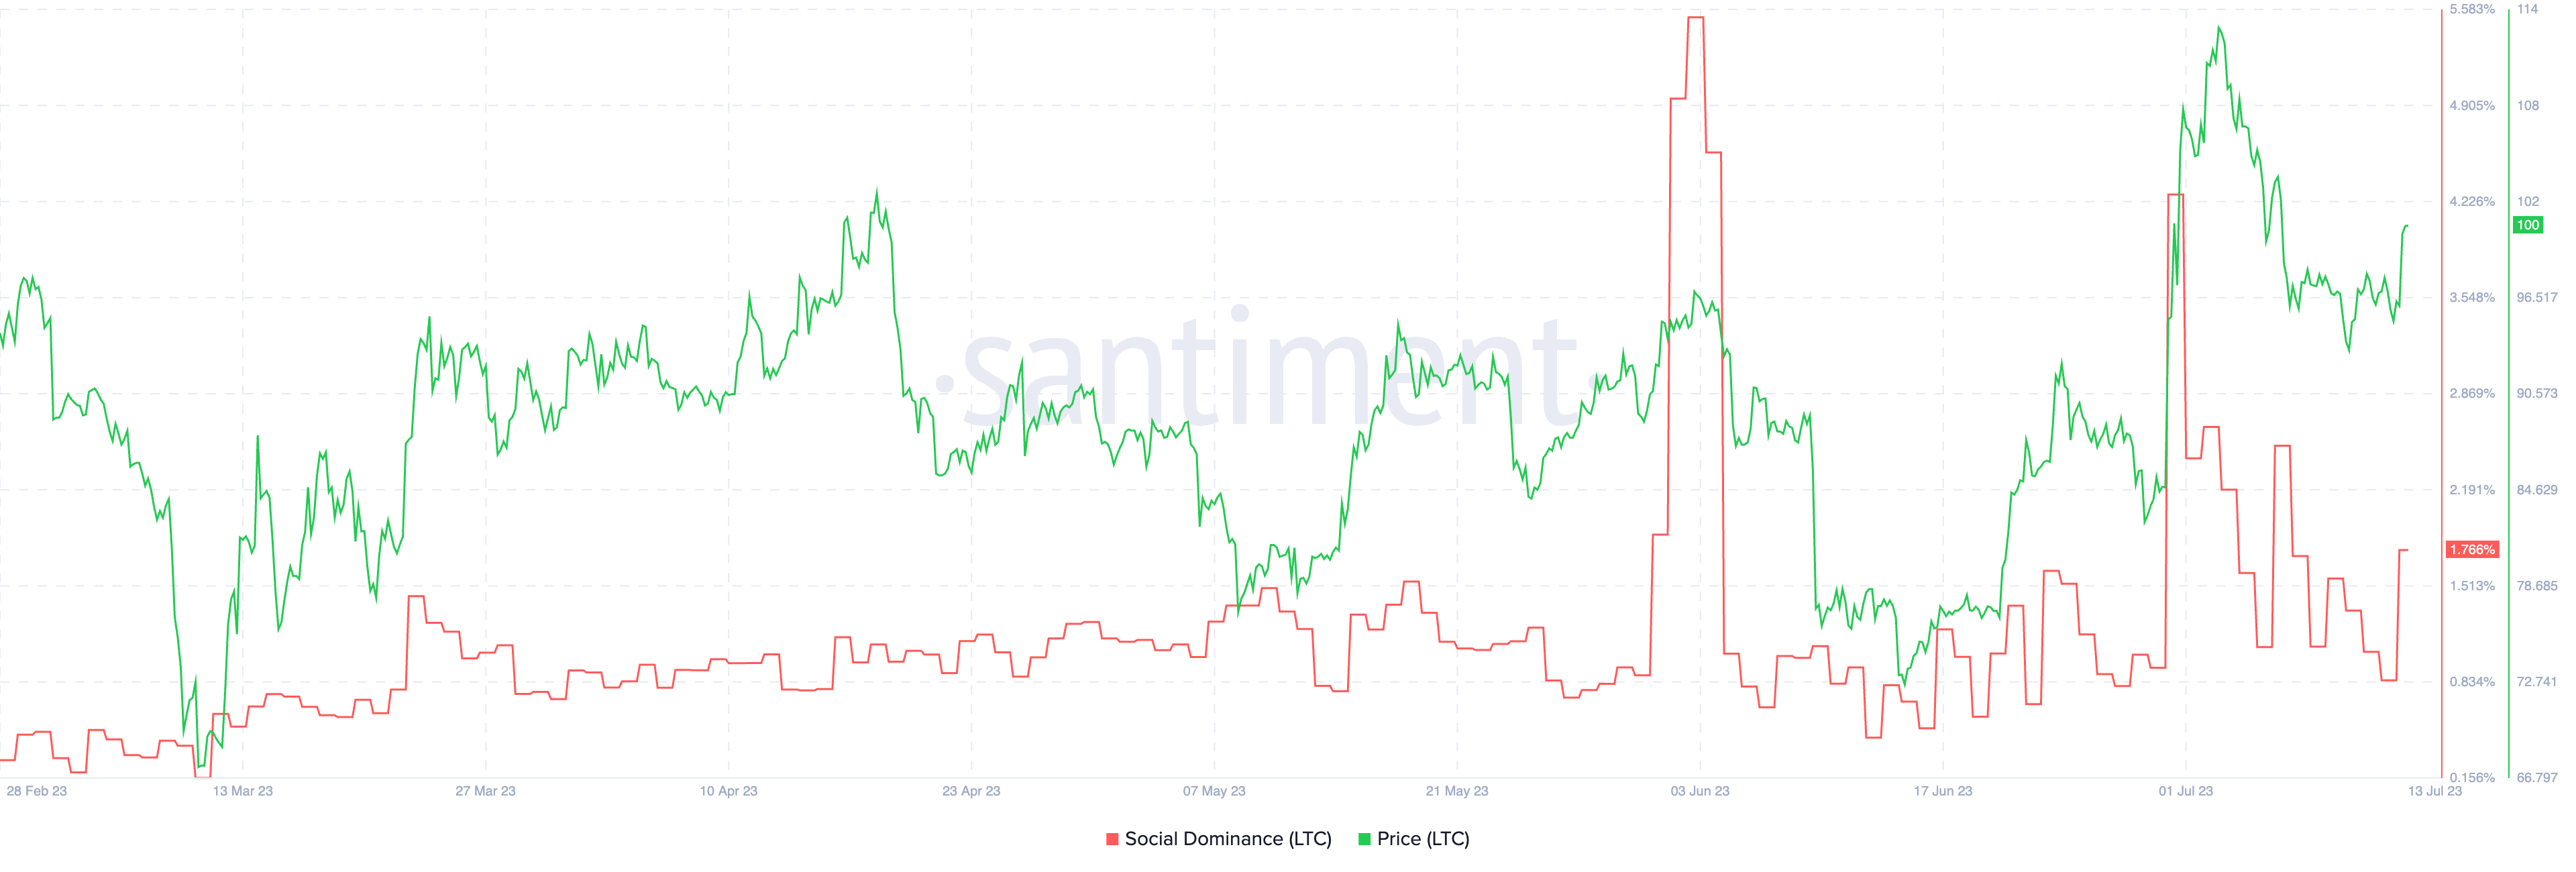 Litecoin social dominance vs price as seen on Santiment